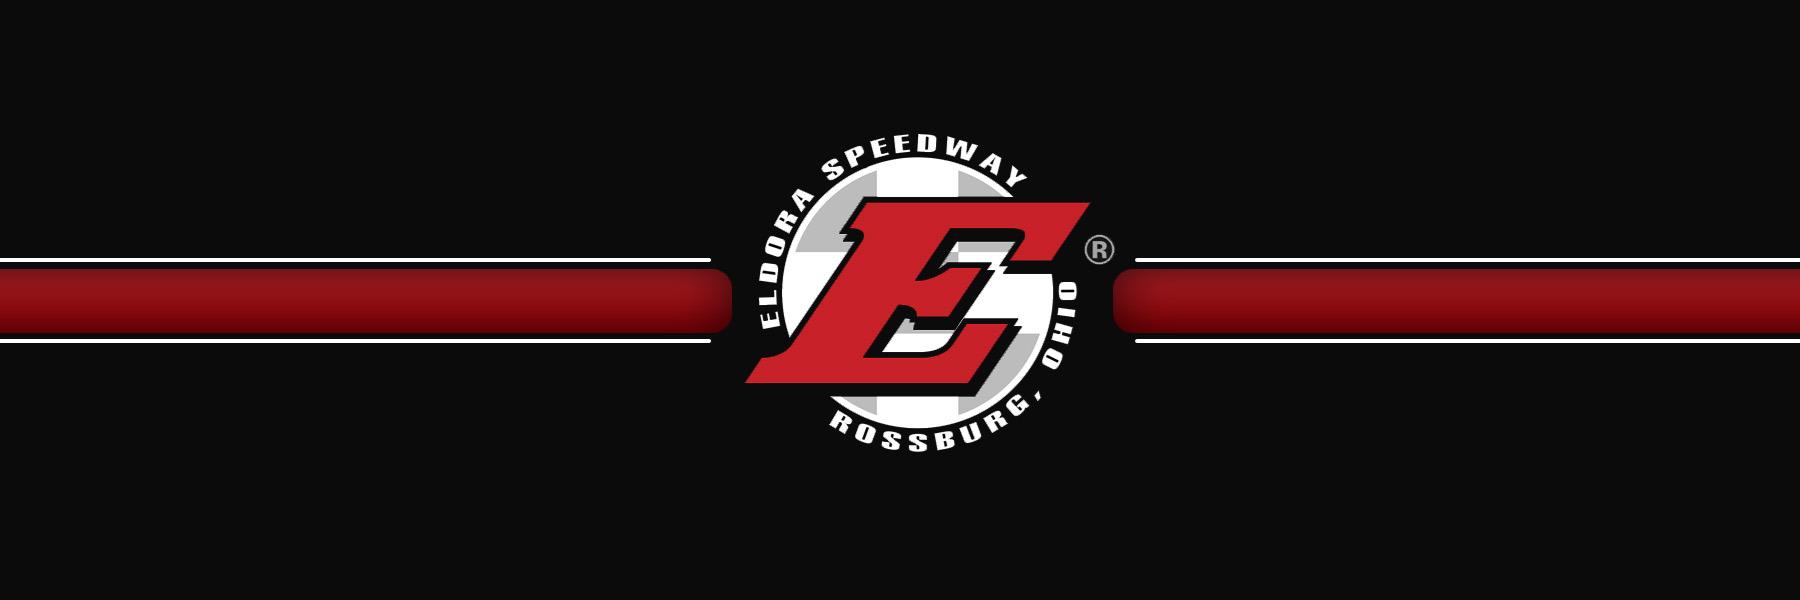 6/10/2022 - Eldora Speedway